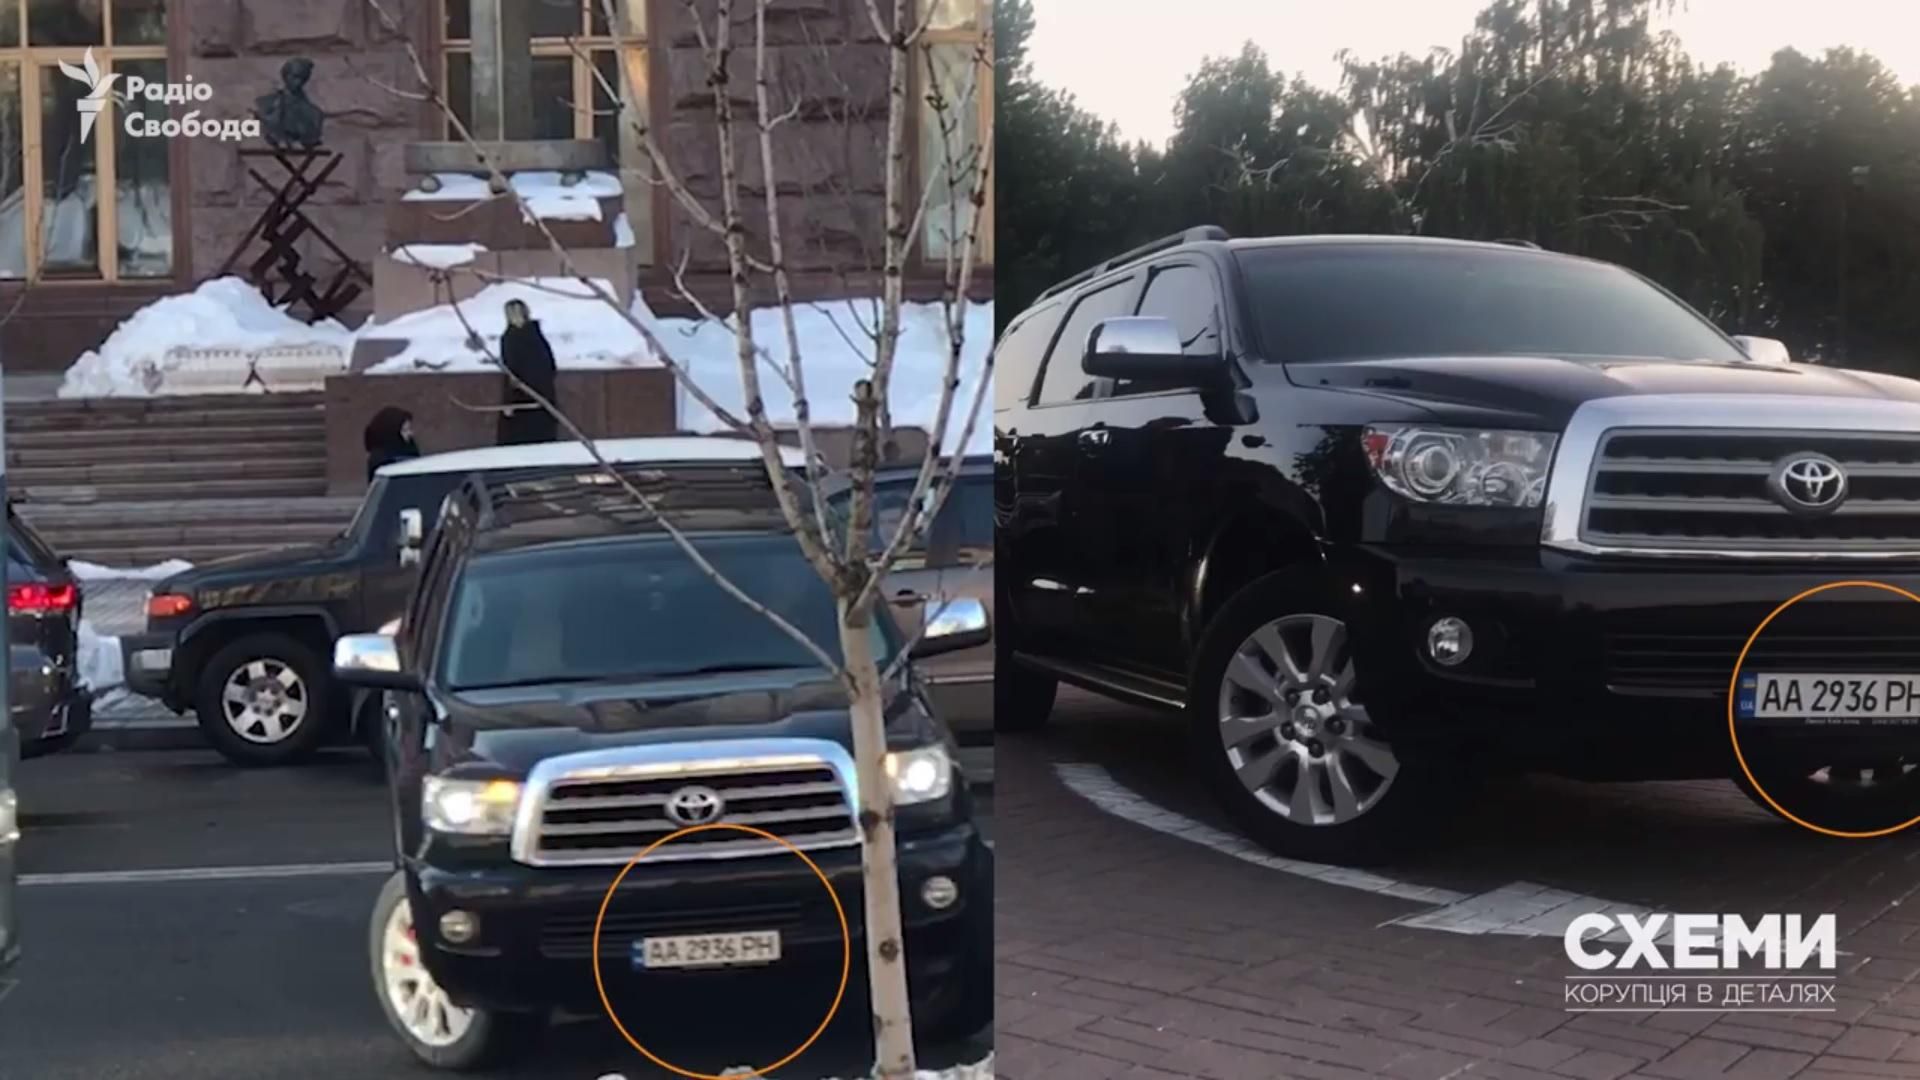 Авто Кличко грубо нарушило правила дорожного движения в центре Киева: видео